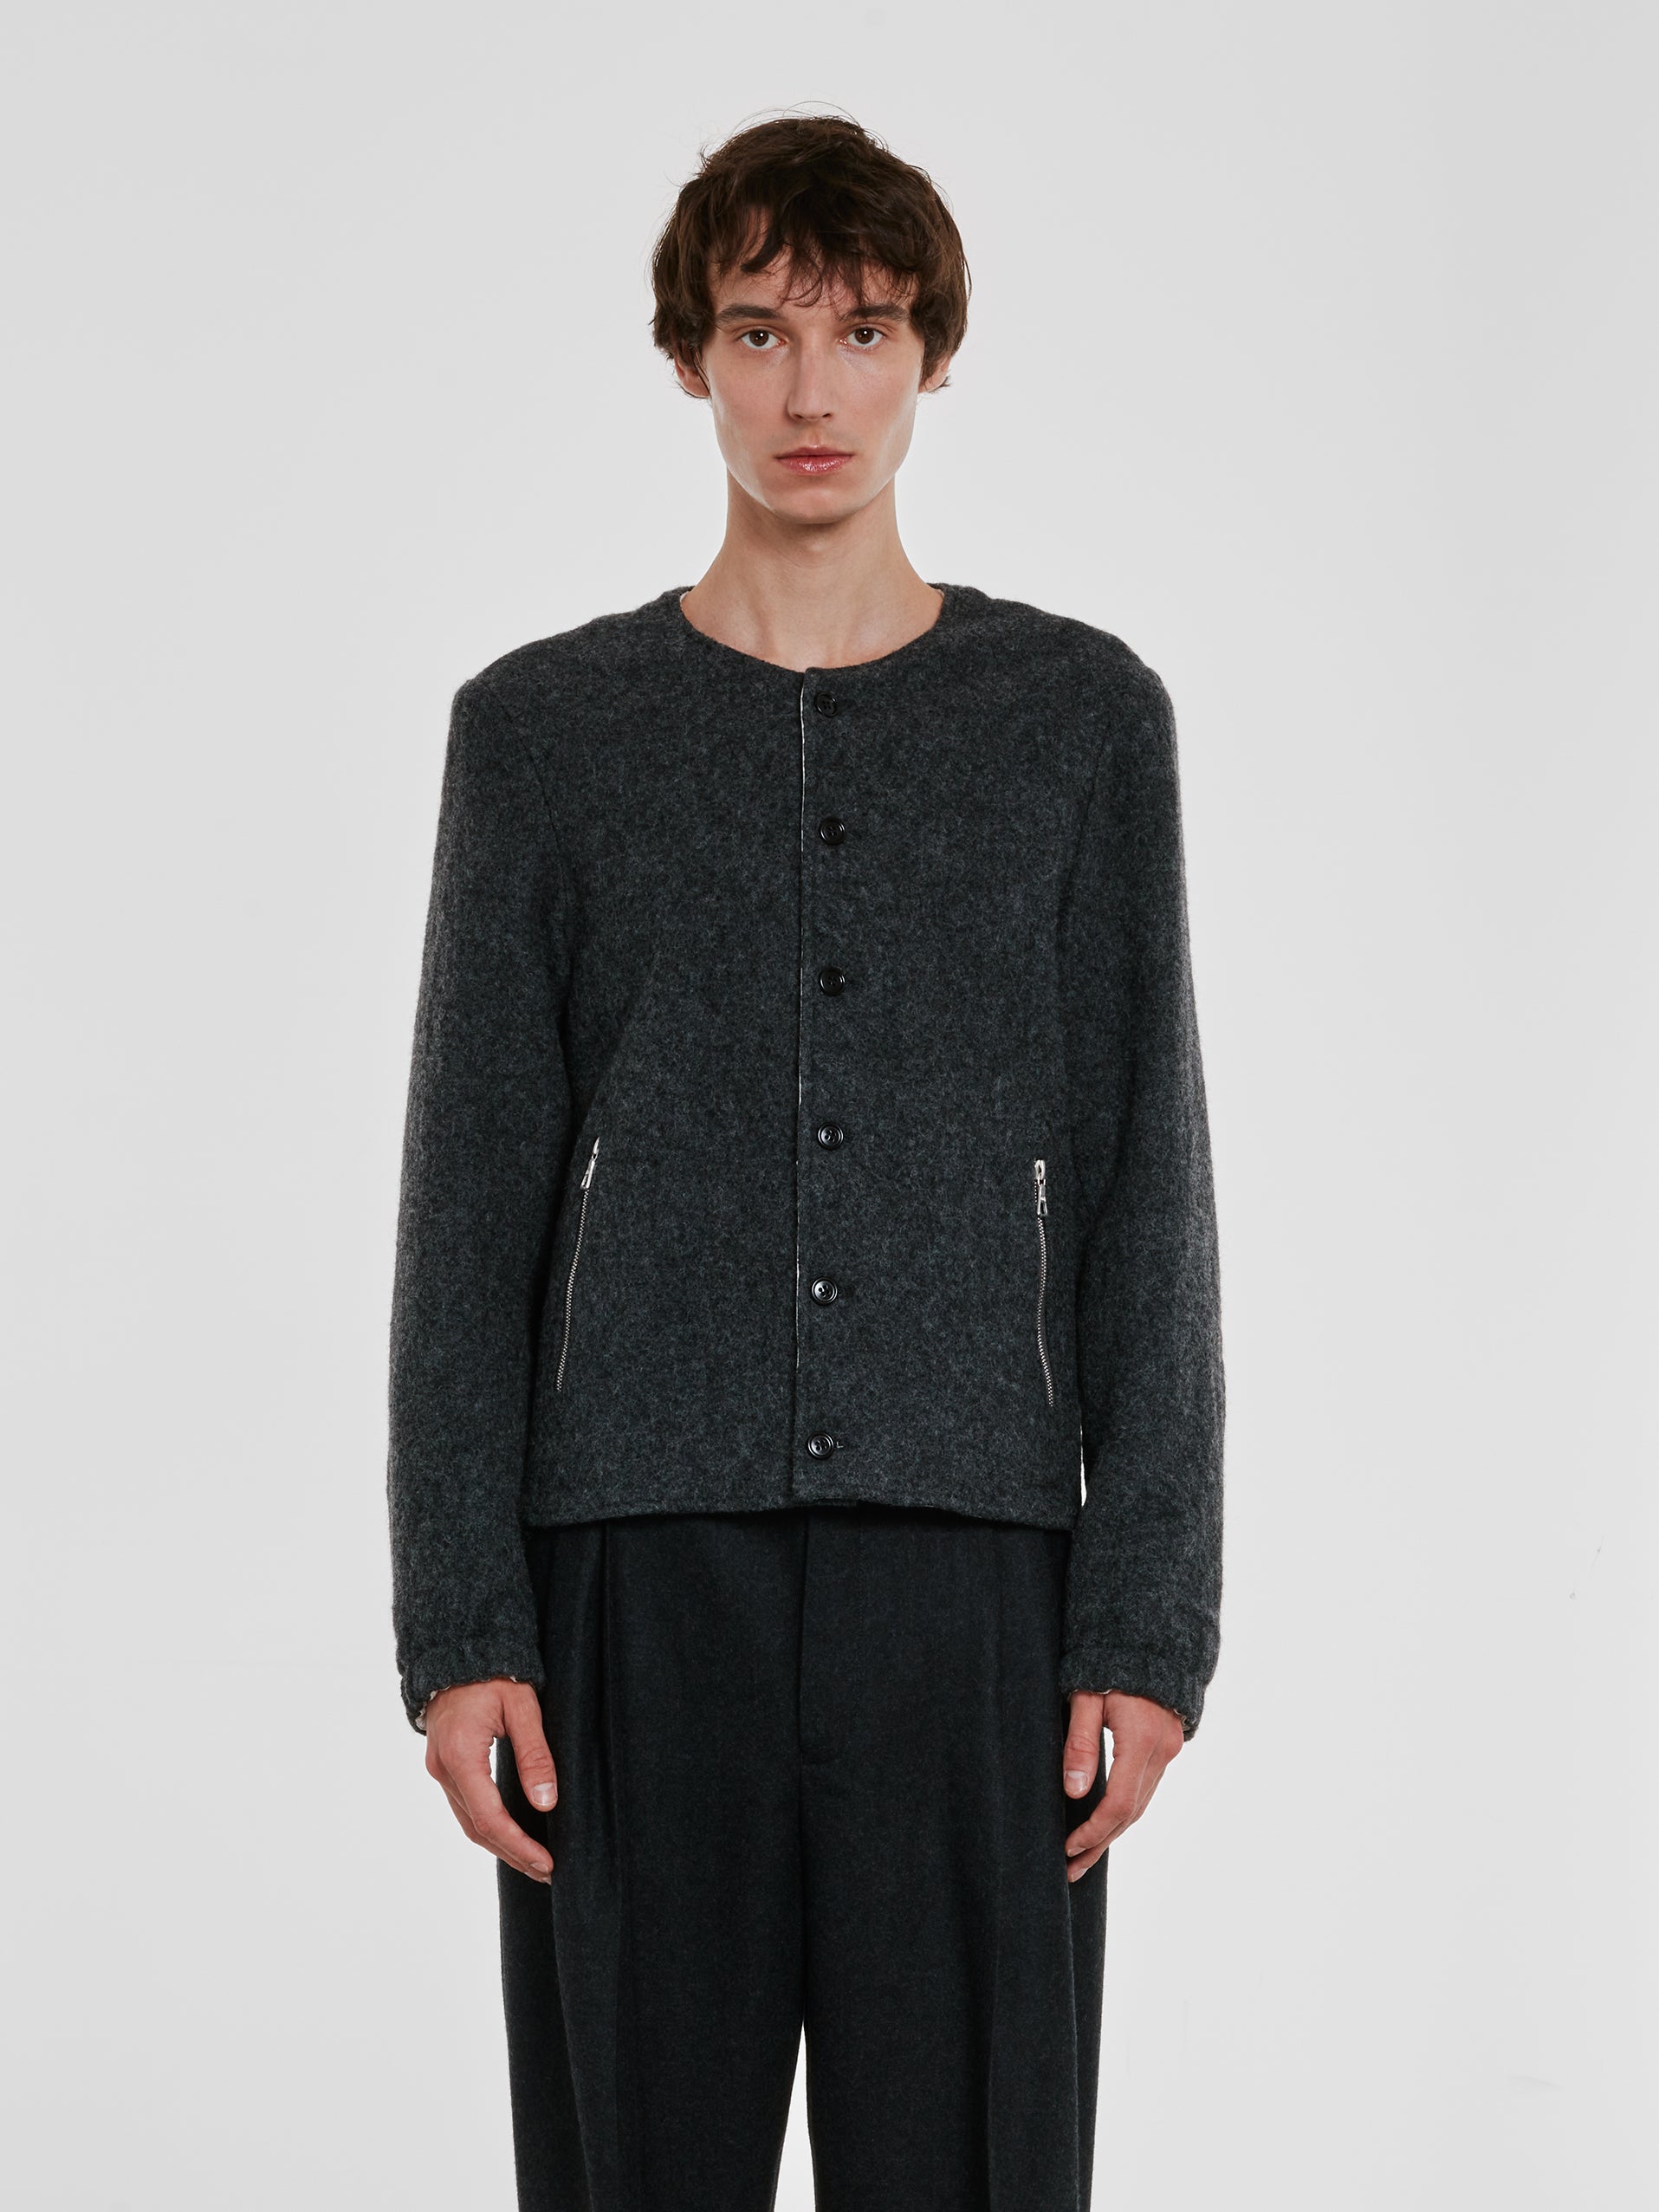 Dries Van Noten - Men’s Collarless Wool Jacket - (Grey) view 1